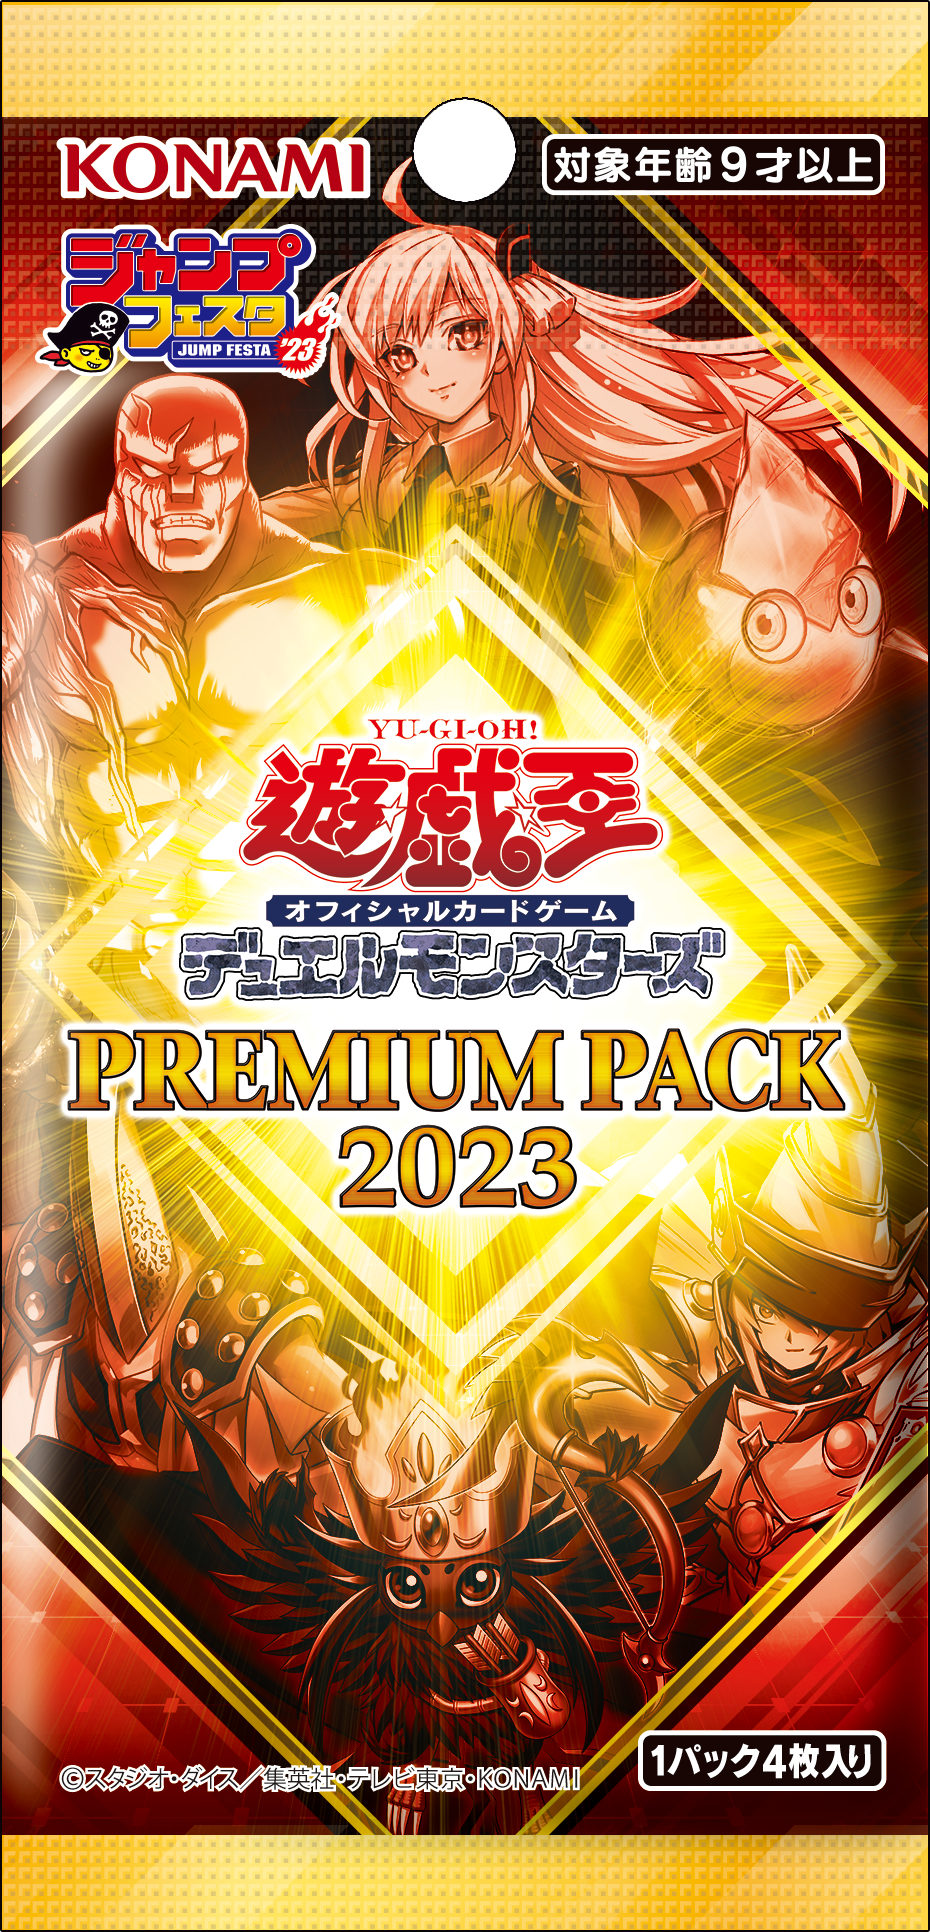 Premium Pack 2023 - Yugipedia